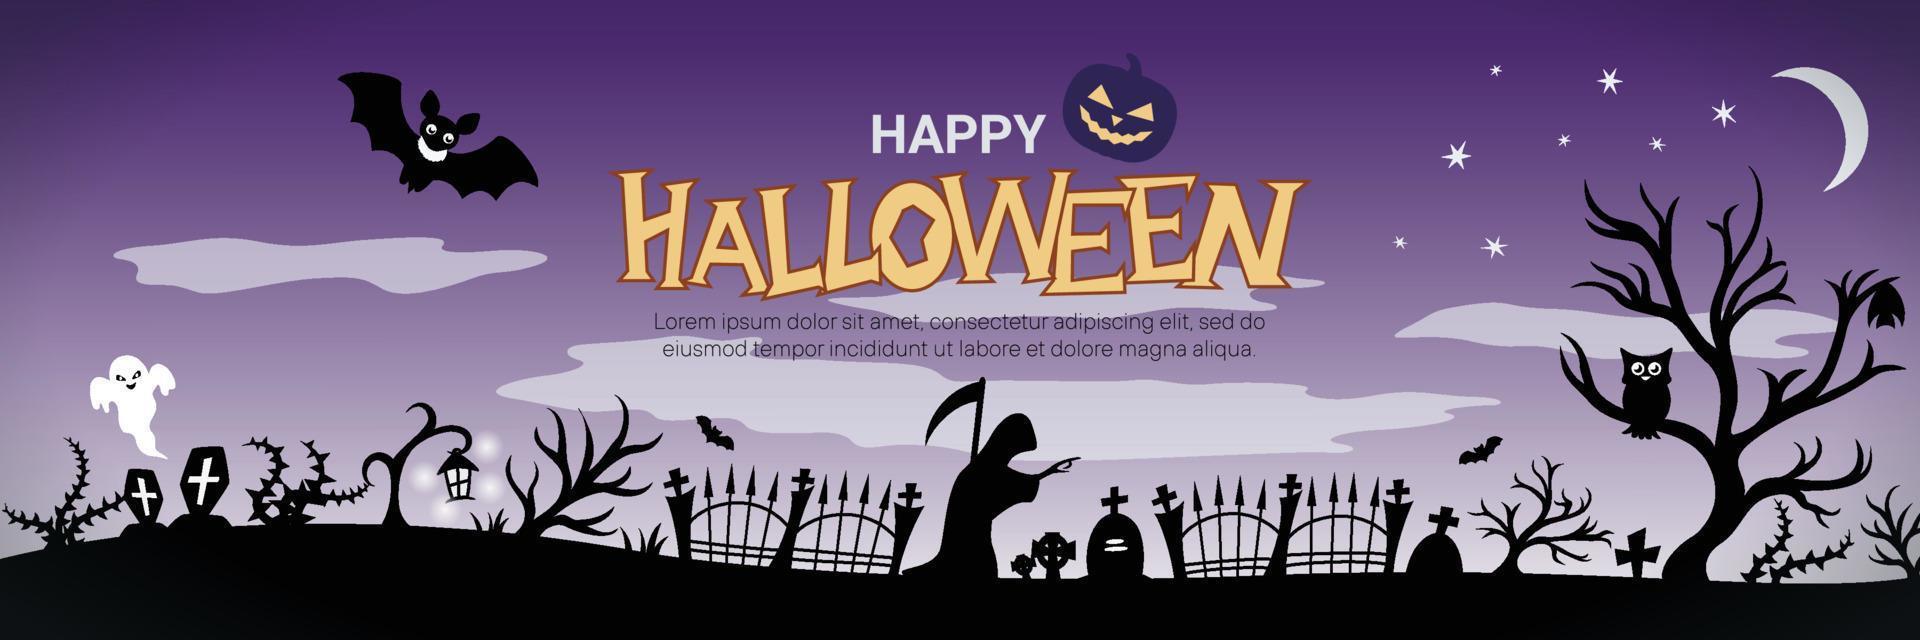 concetto di banner di halloween con cimitero silhouette, grim reaper, alberi inquietanti, pipistrelli e testo felice di halloween vettore